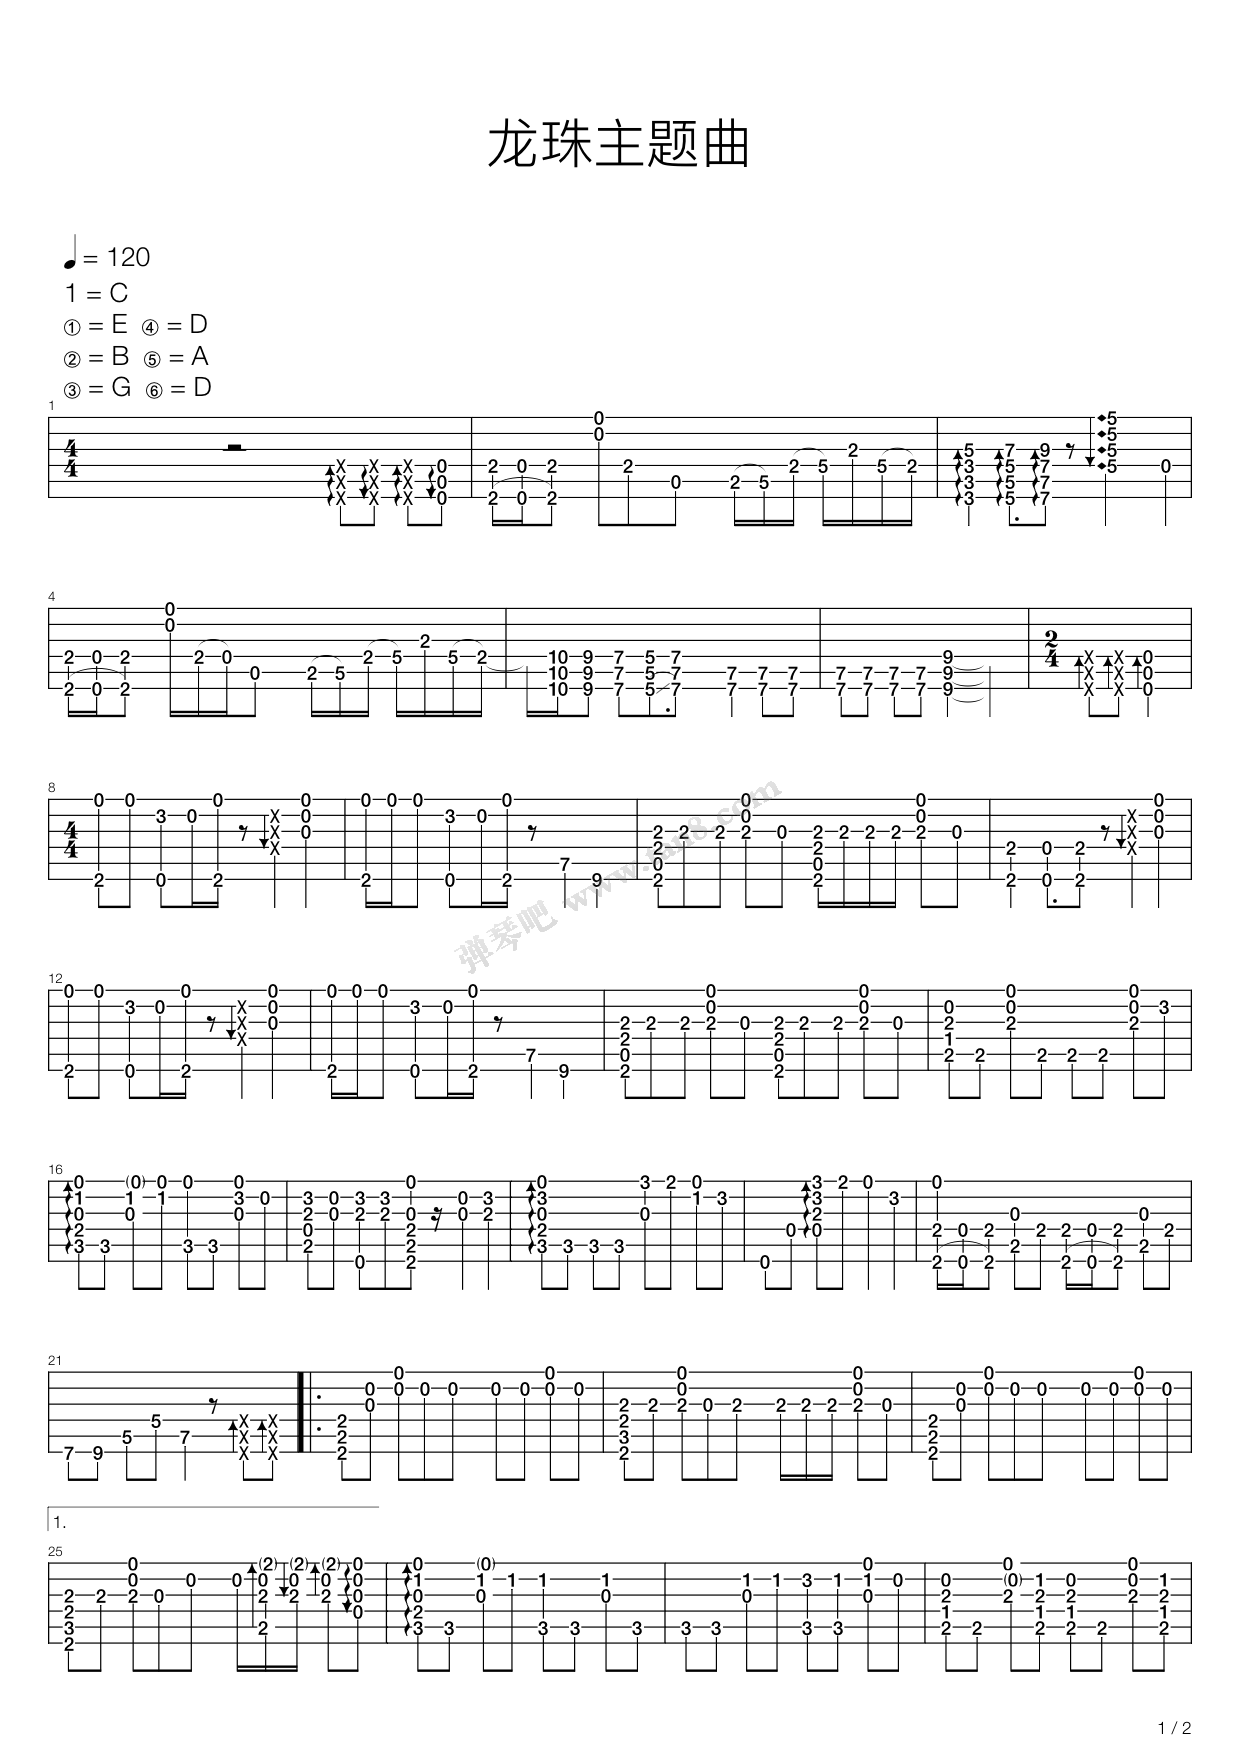 Cha-La Head-Cha-La-龙珠Z OP1双手简谱预览3-钢琴谱文件（五线谱、双手简谱、数字谱、Midi、PDF）免费下载